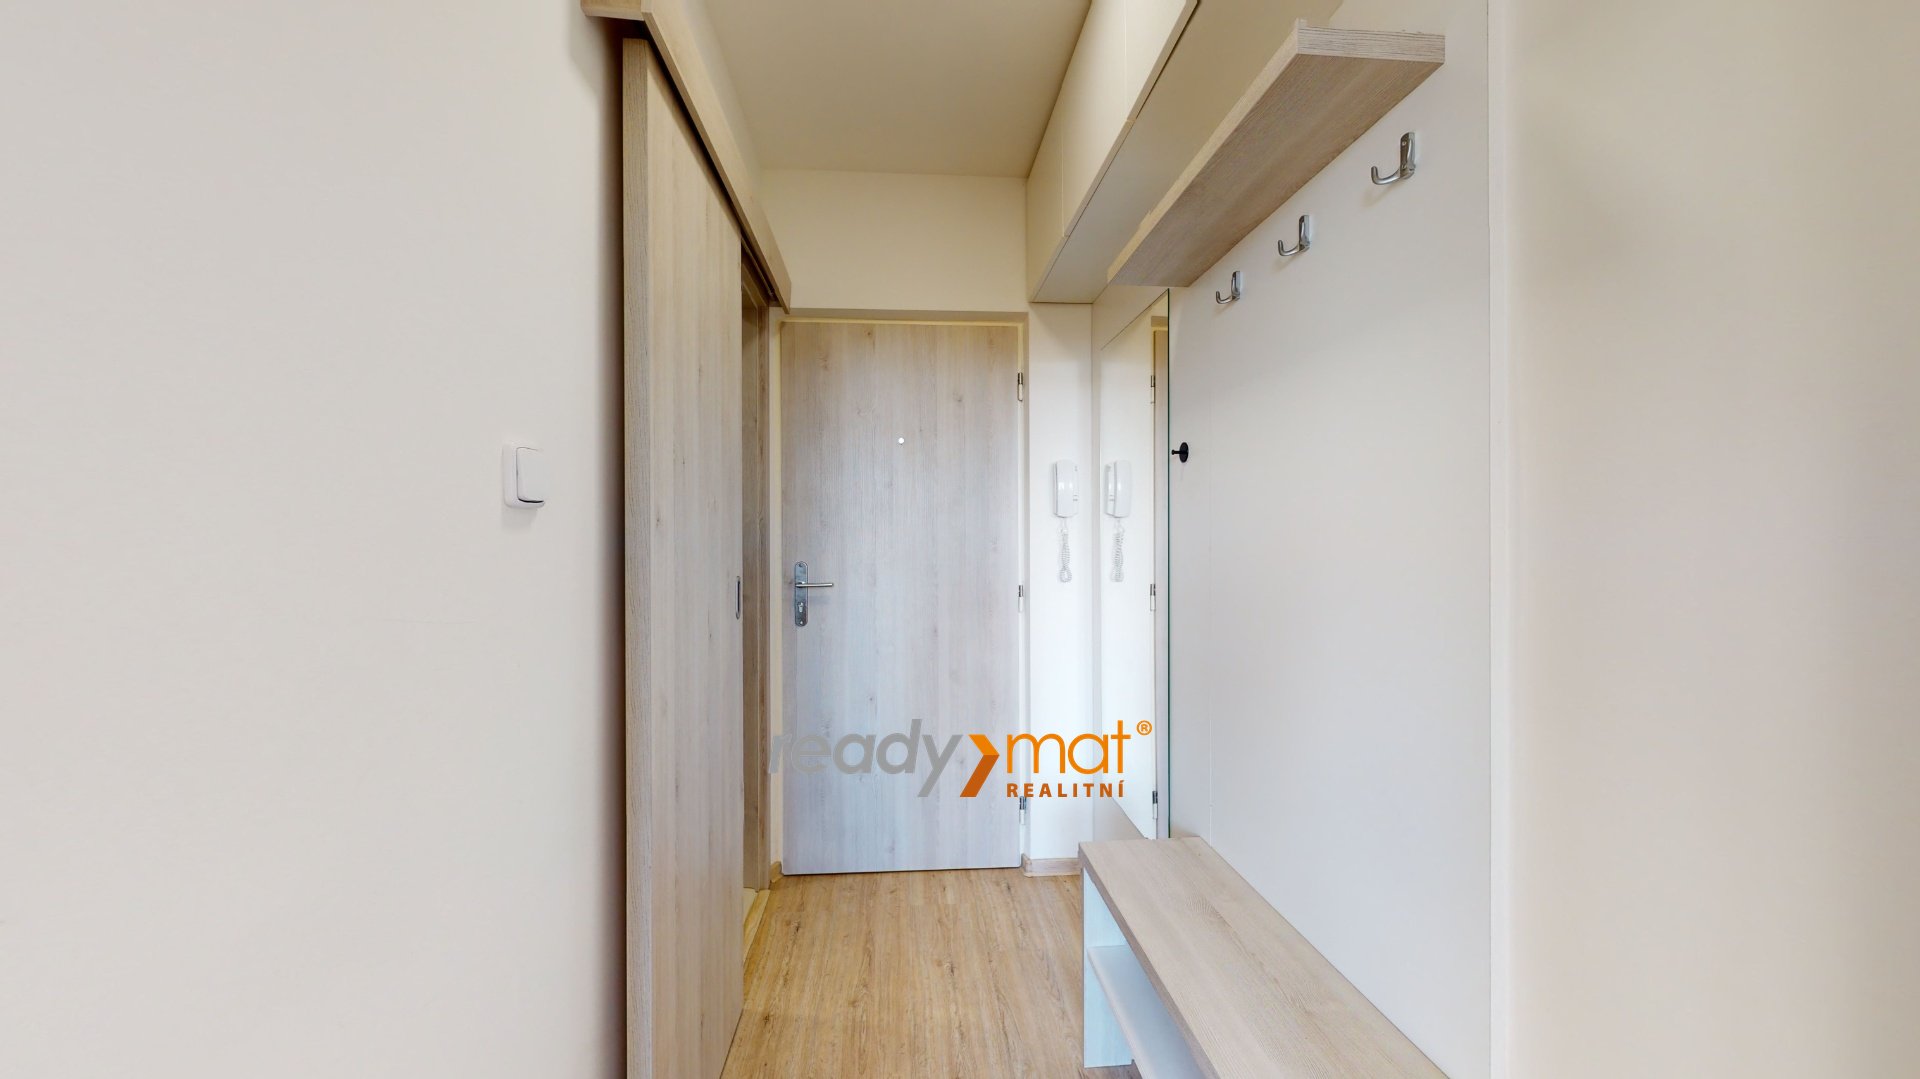 Prodej, Byty 1+1, 34 m² – Hodonín - ready-mat realitní